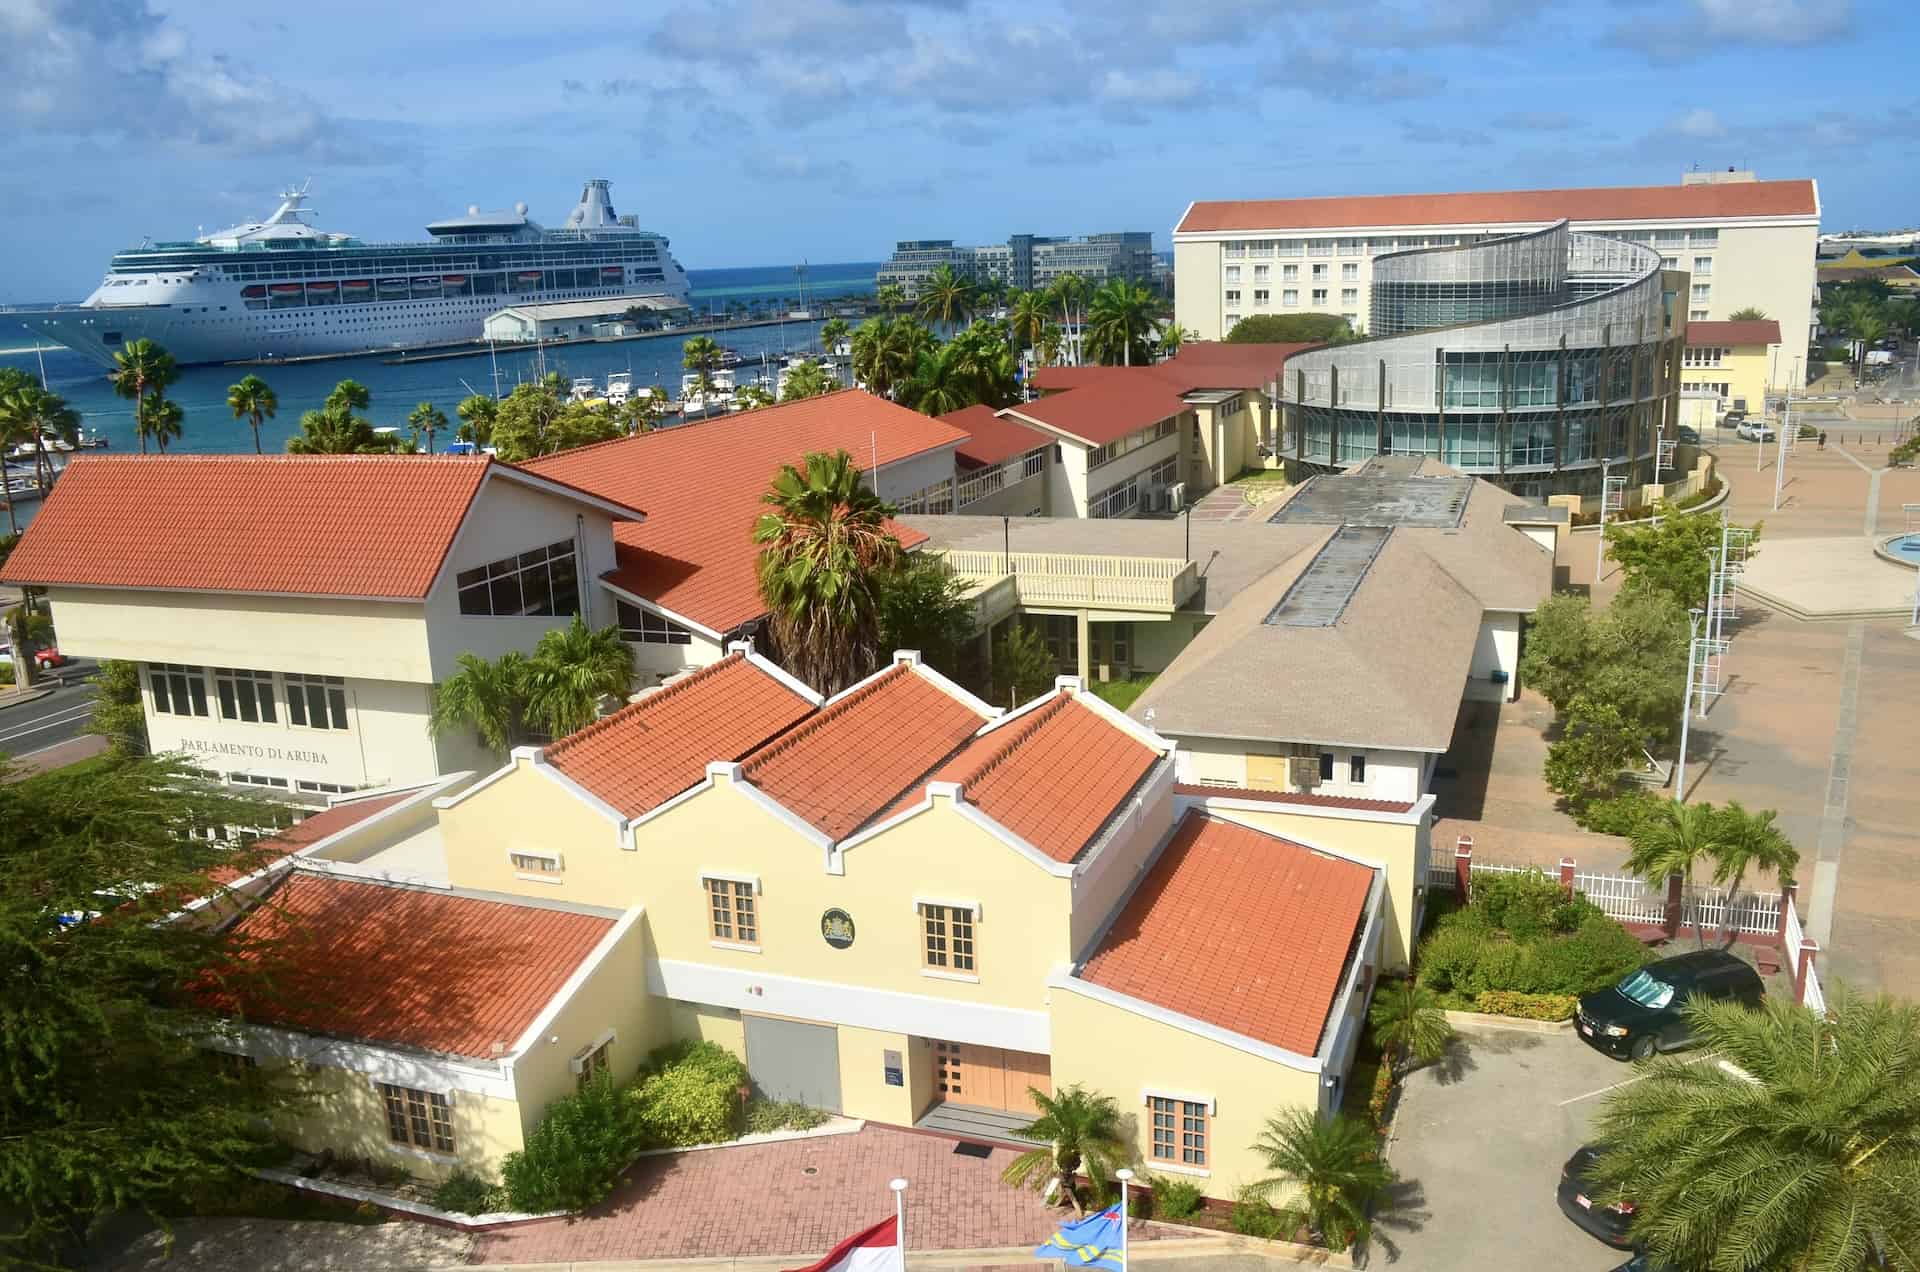 Government complex in Oranjestad, Aruba